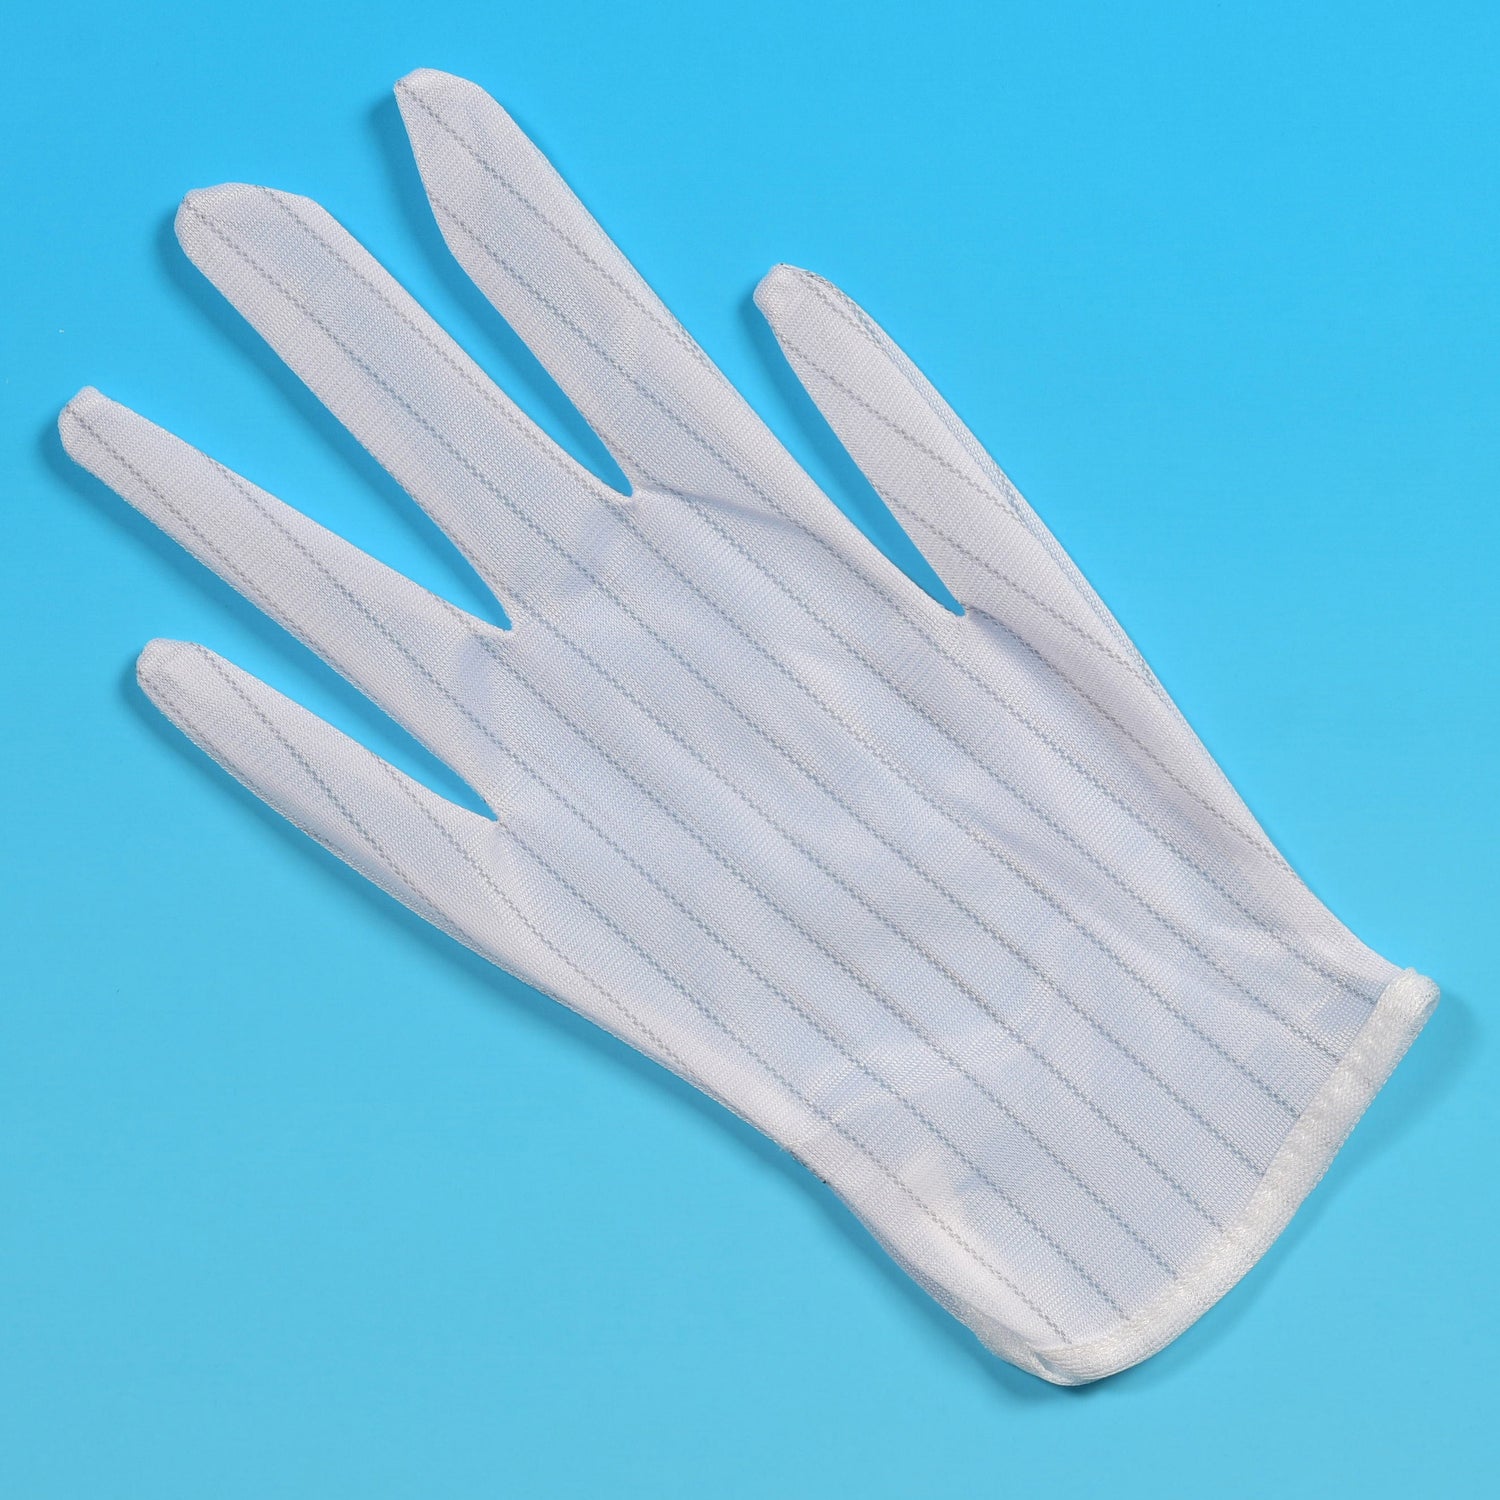 Striped anti-static glove